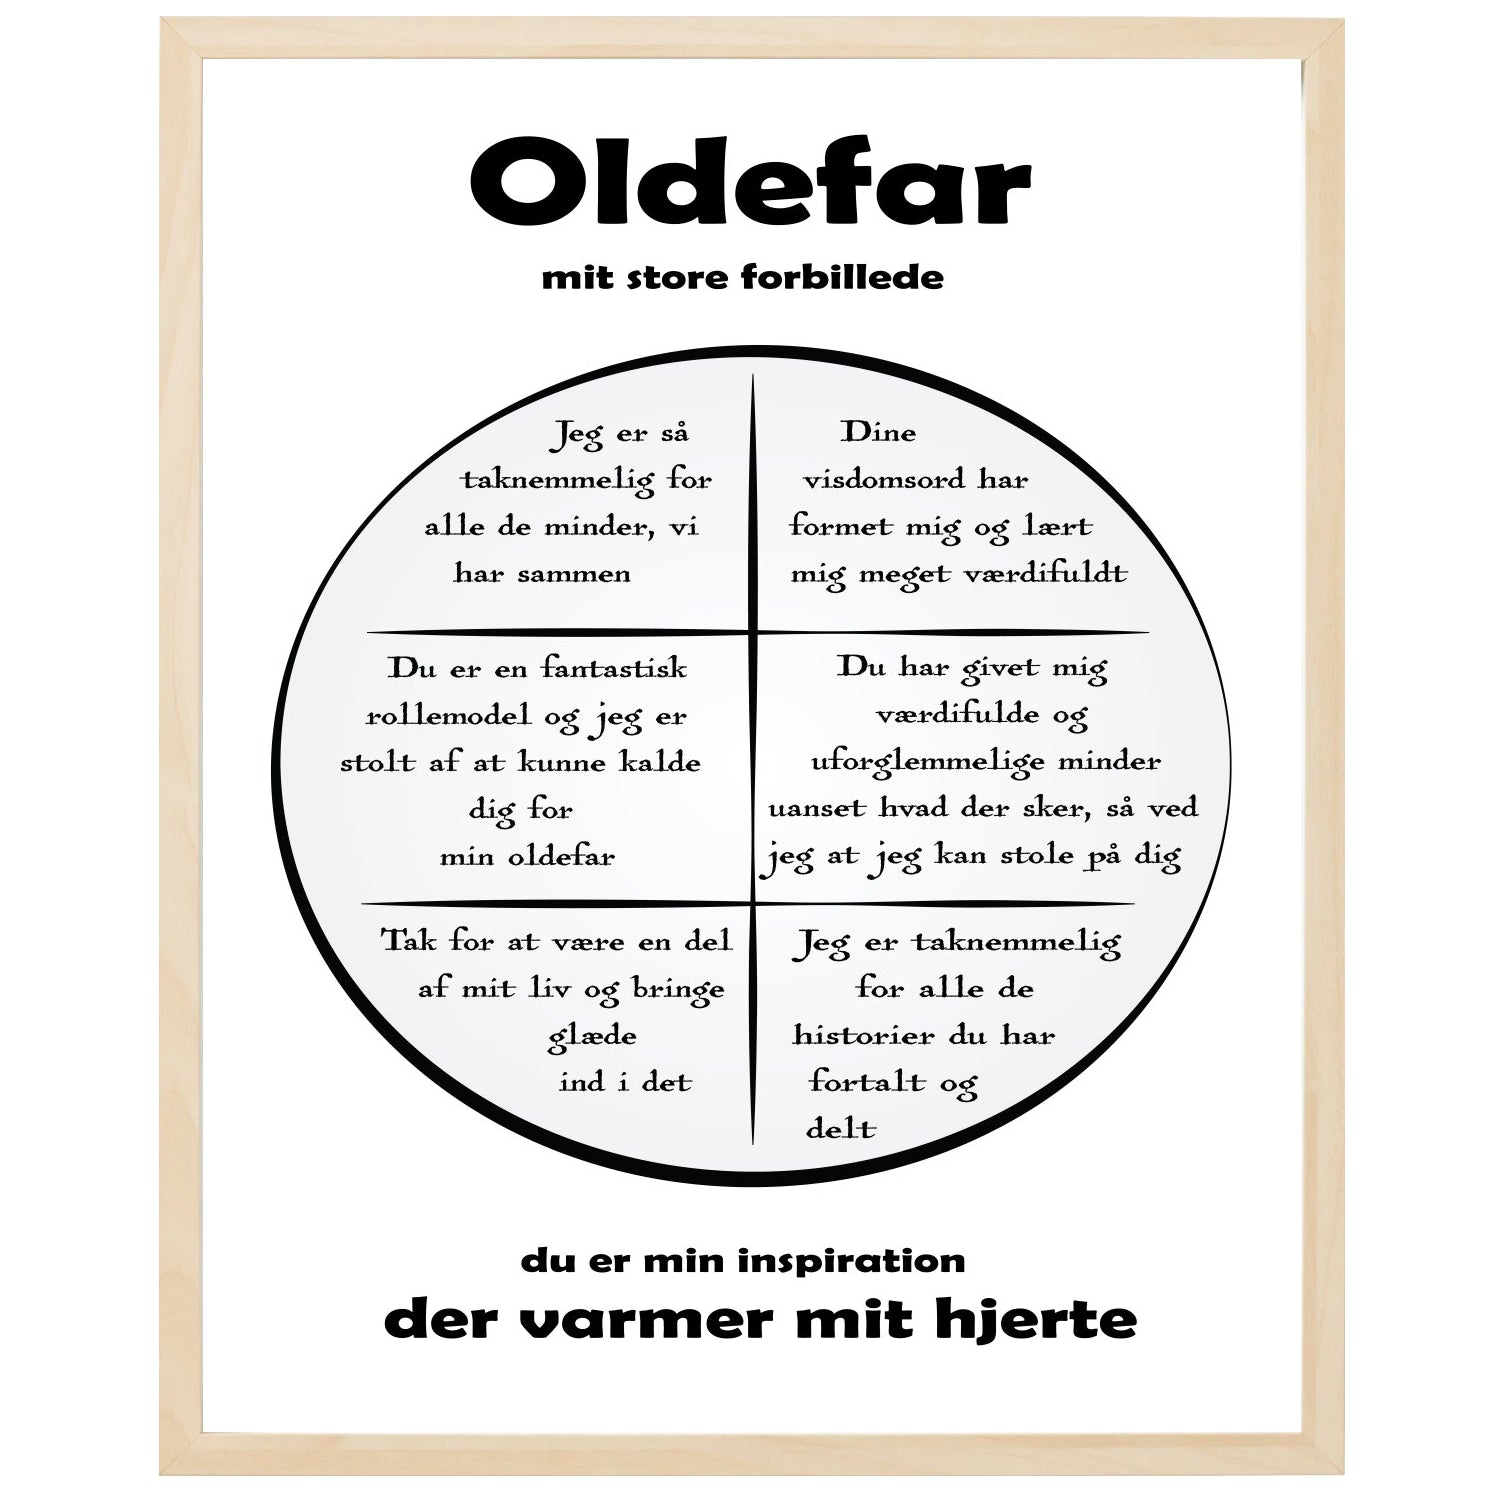 En plakat med overskriften Oldefar, en rustik cirkel og indeni cirklen mange positive sætninger som beskriver en Oldefar